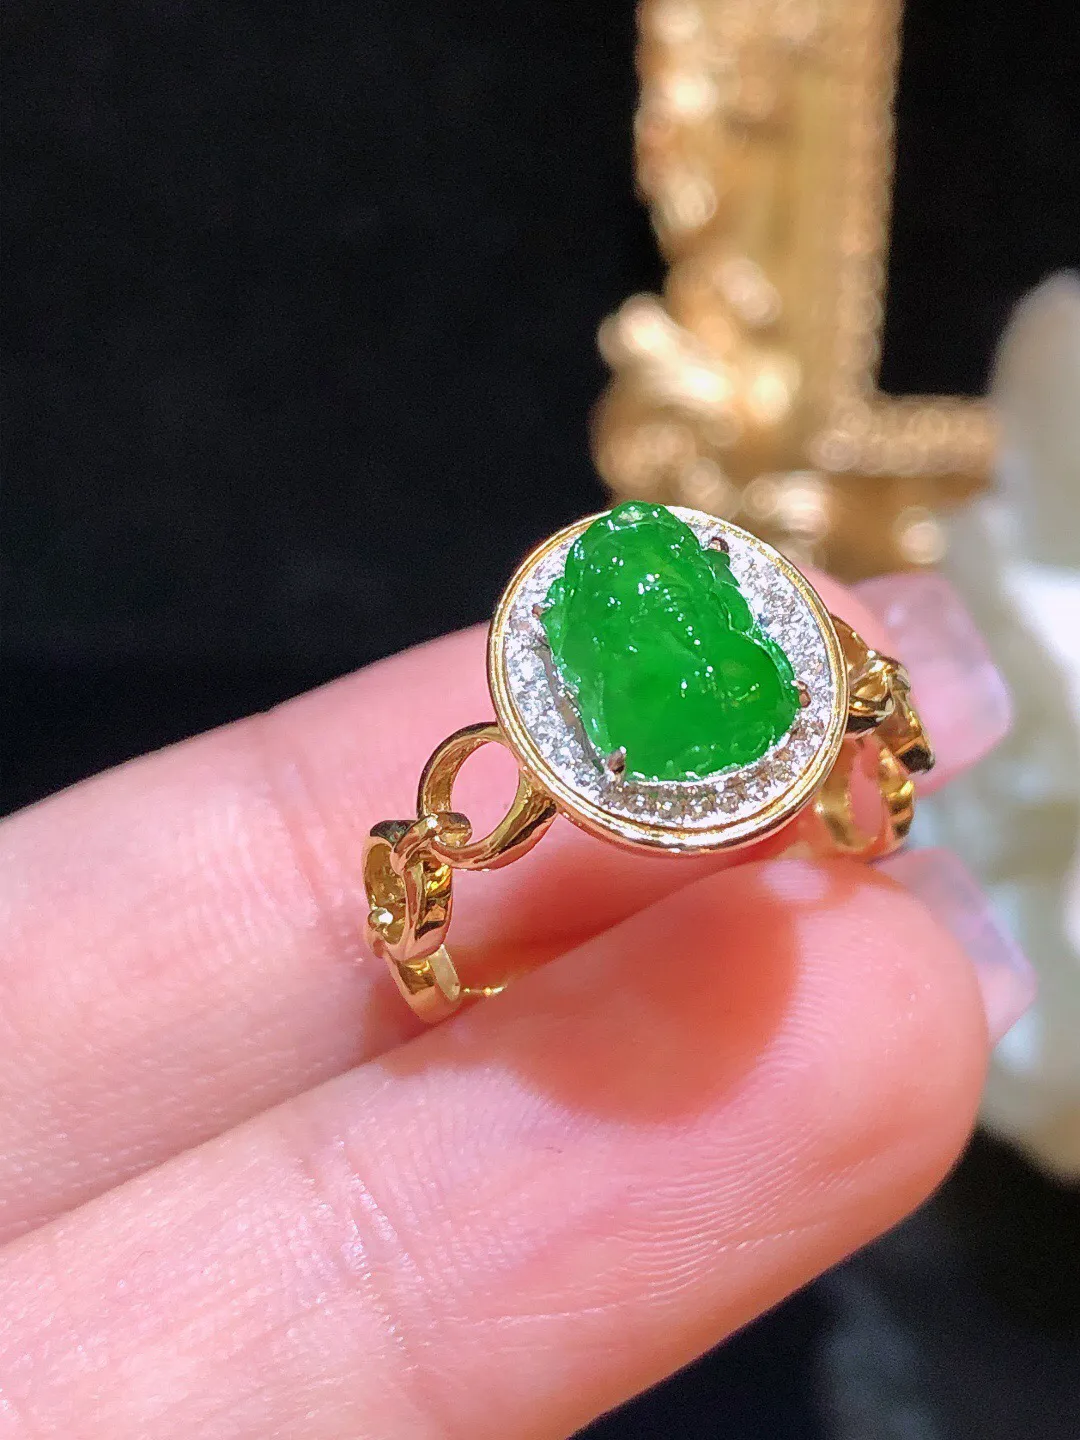 翡翠冰绿貔貅戒指 雕工精细 颜色鲜艳 飘绿色艳